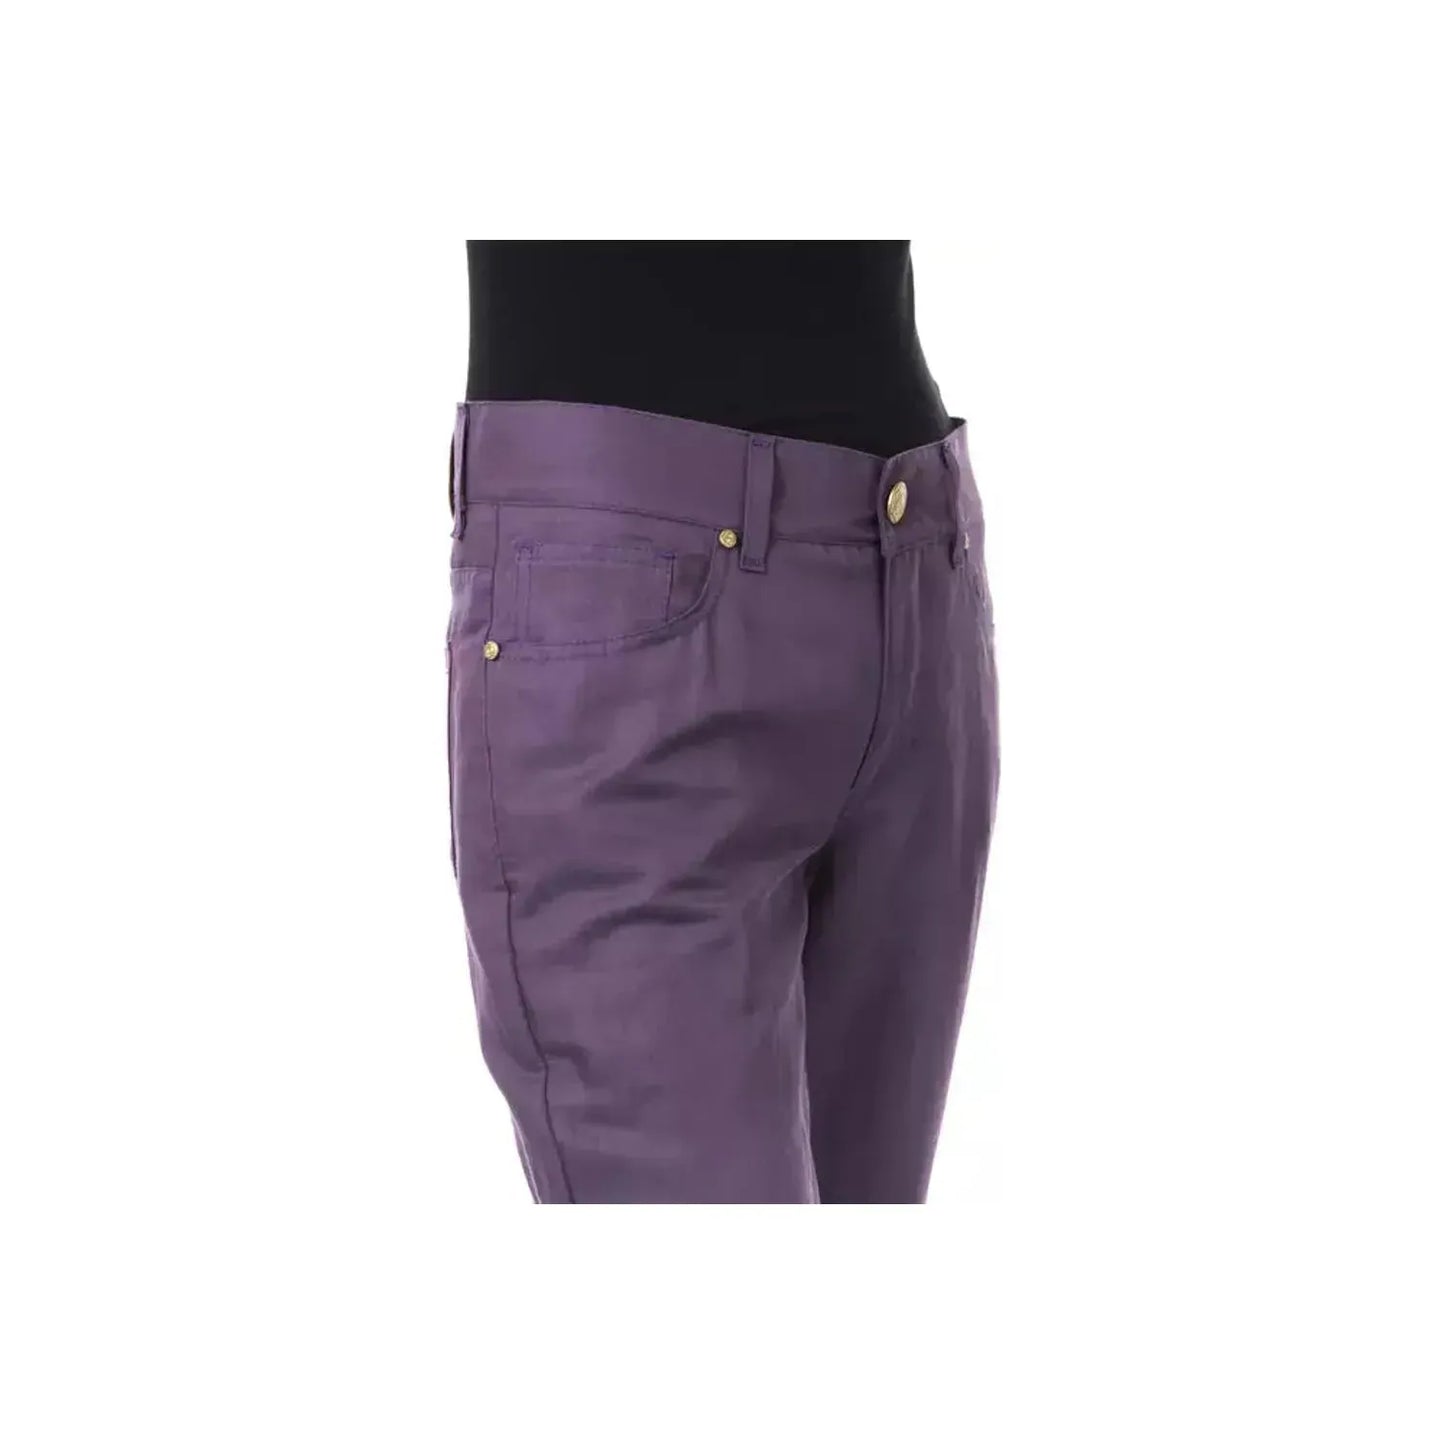 BYBLOS Chic Purple Cotton-Blend Trousers violet-cotton-jeans-pant stock_product_image_17632_258333291-18-0b997100-f61.webp